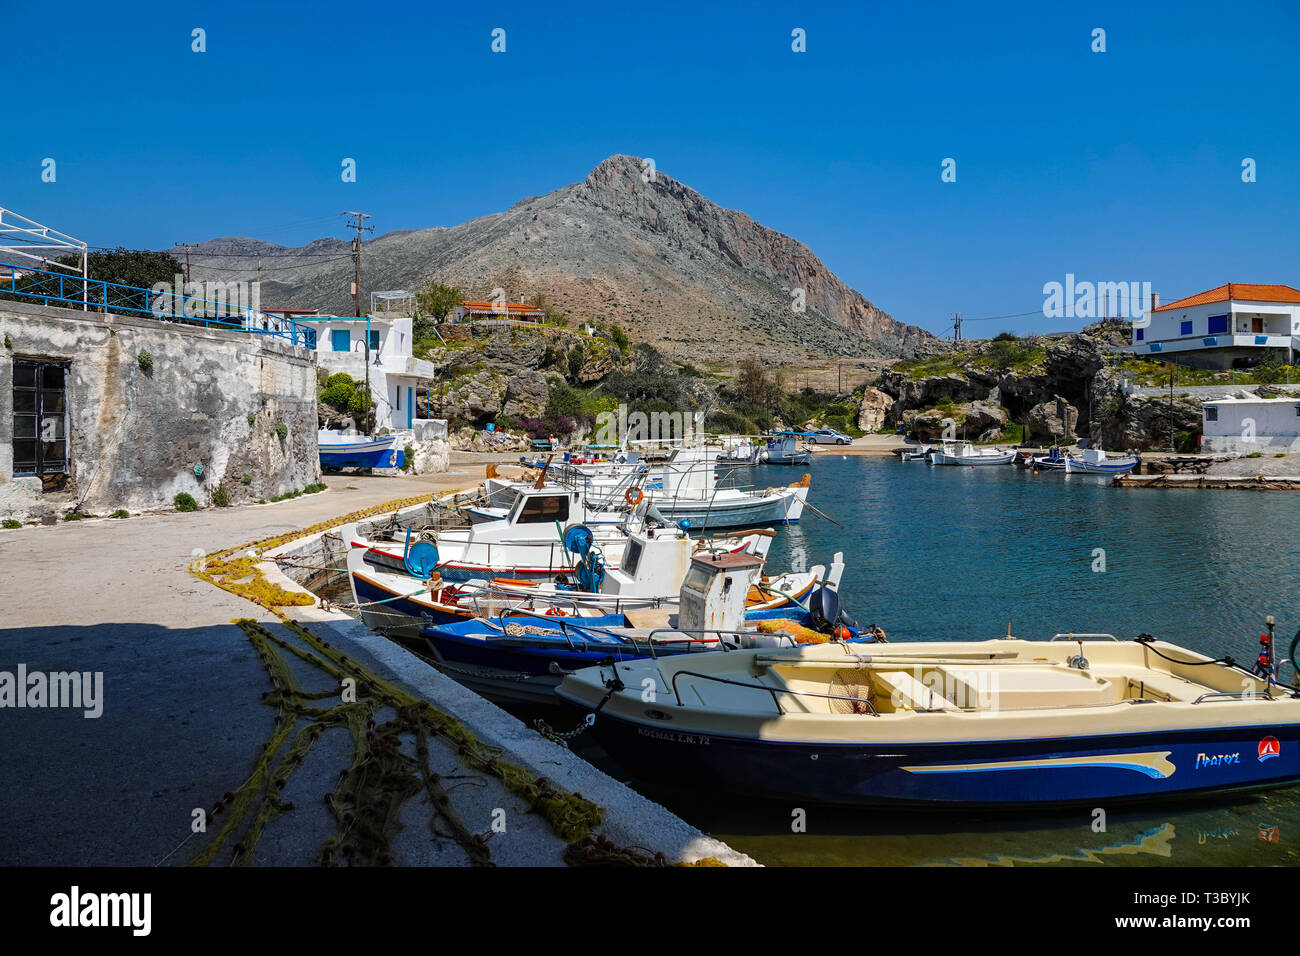 Petit port et bateaux de pêche au village de Profitis Ilias, près de Neapoli Voion, printemps, printemps, Peleponnese, grèce, grec Banque D'Images